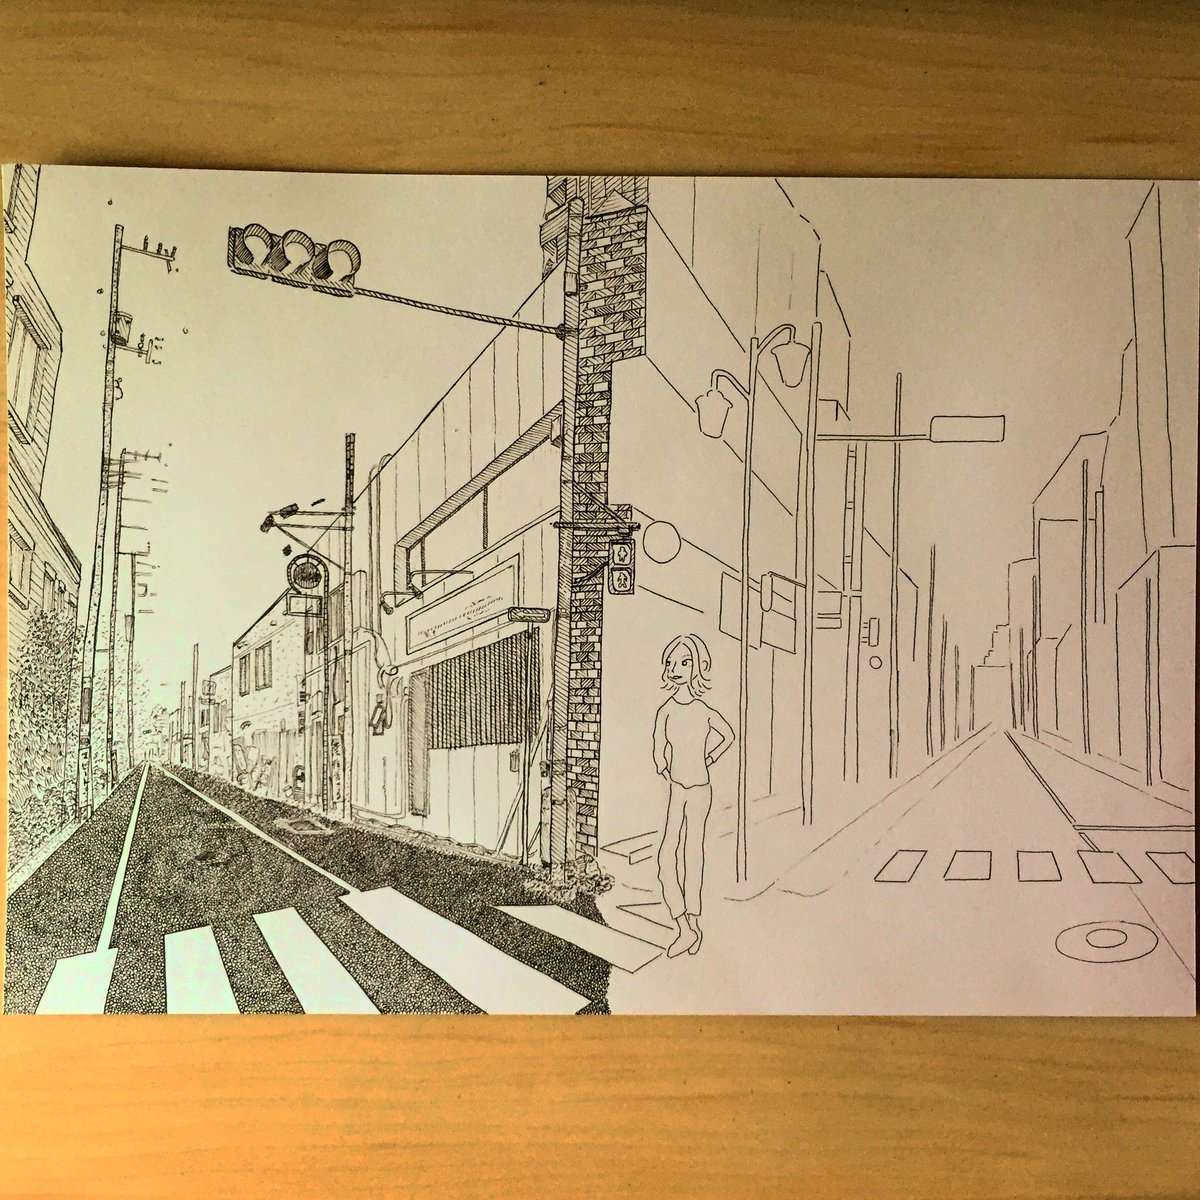 Sakki ミリペン ペン画 アナログ 制作中 線画 風景画 国立 外ハネ 二叉路 絵描きさんと繋がりたい